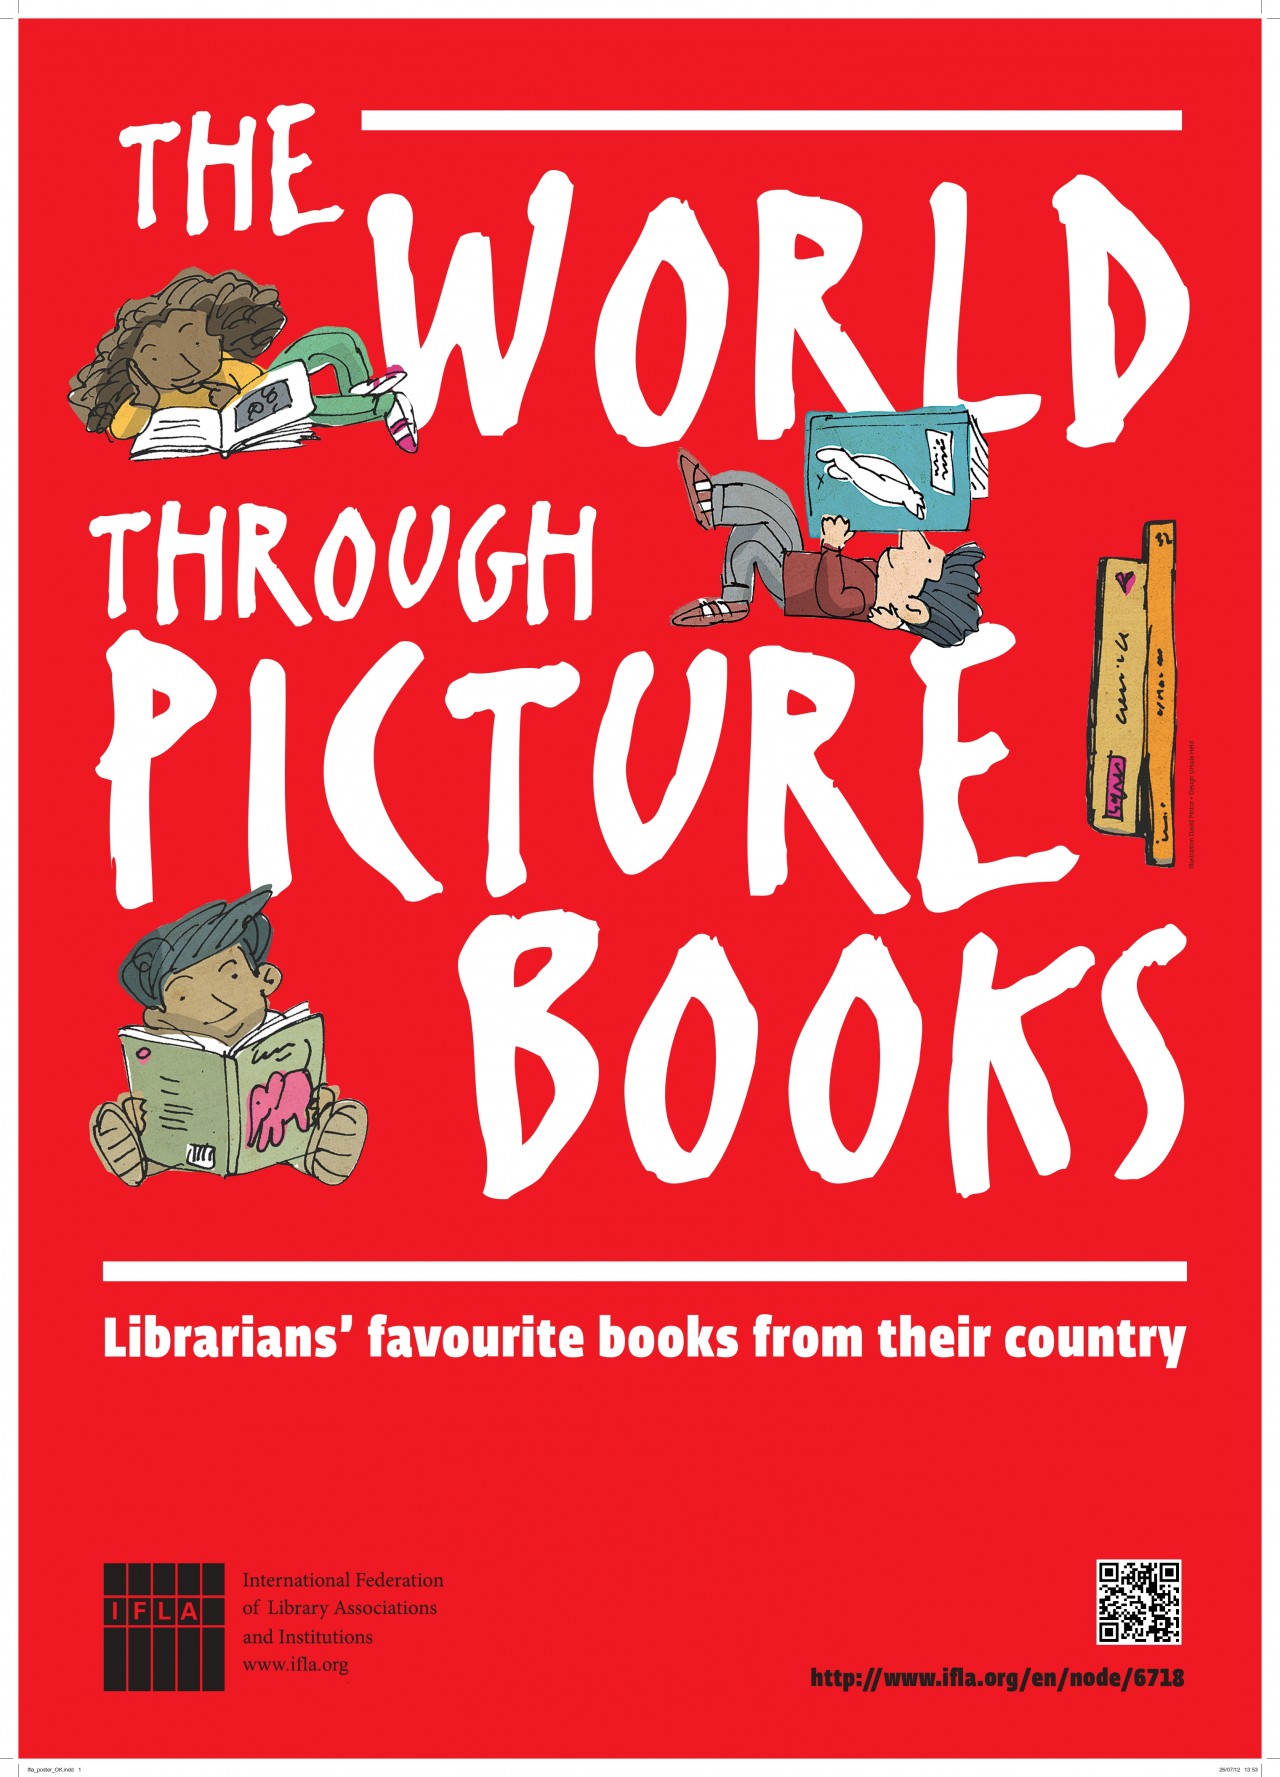 IFLA C&YA World Picture Books